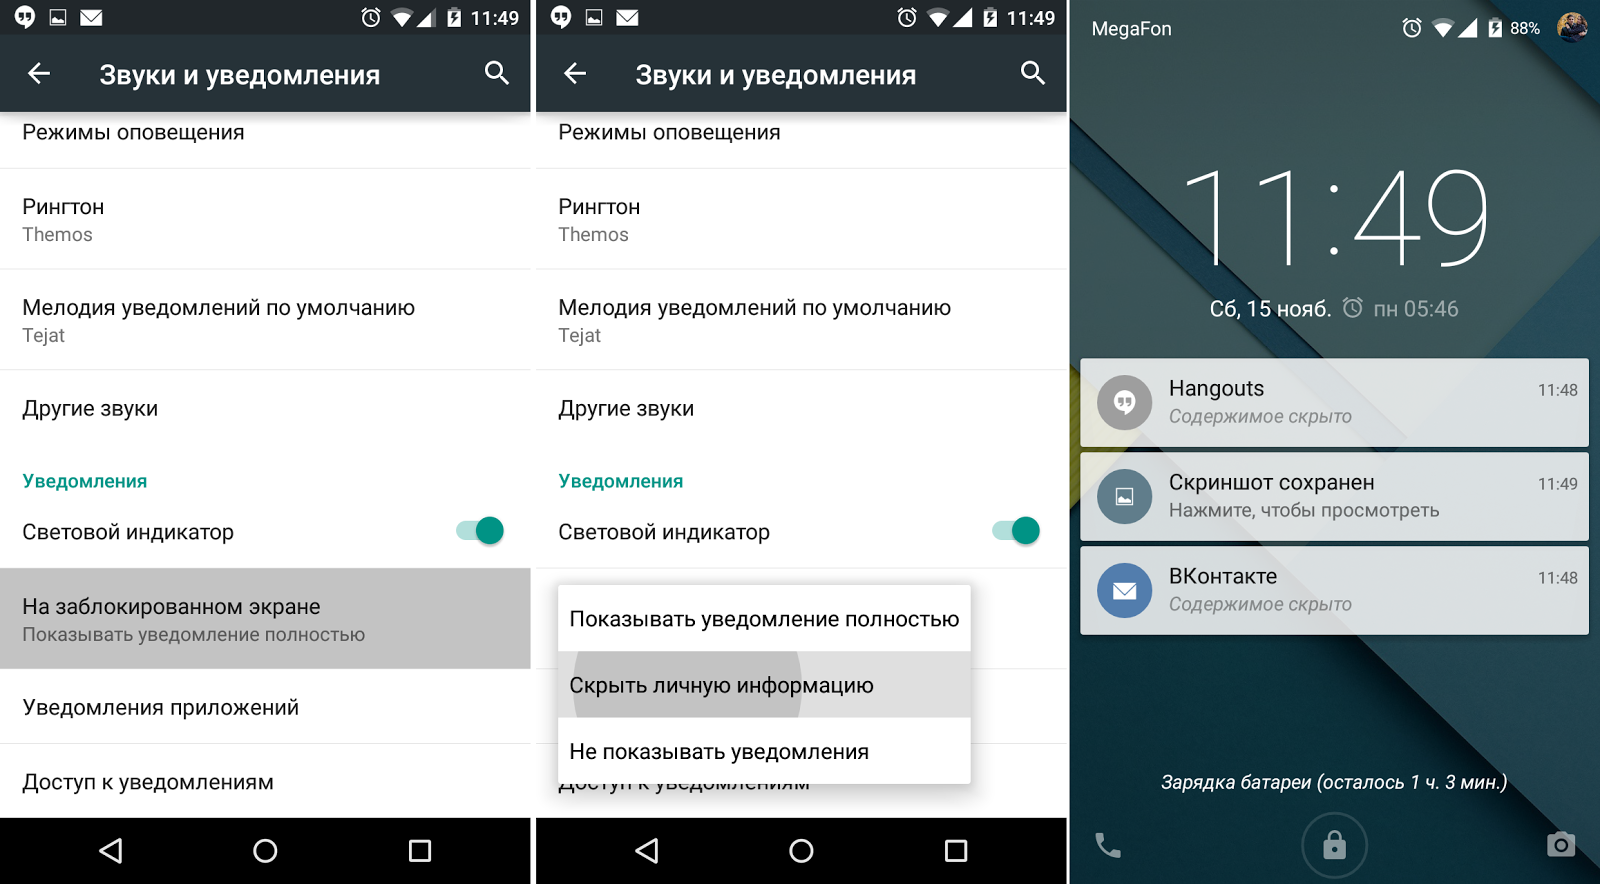 Как настроить и установить apk приложение на смартфон android – руководство